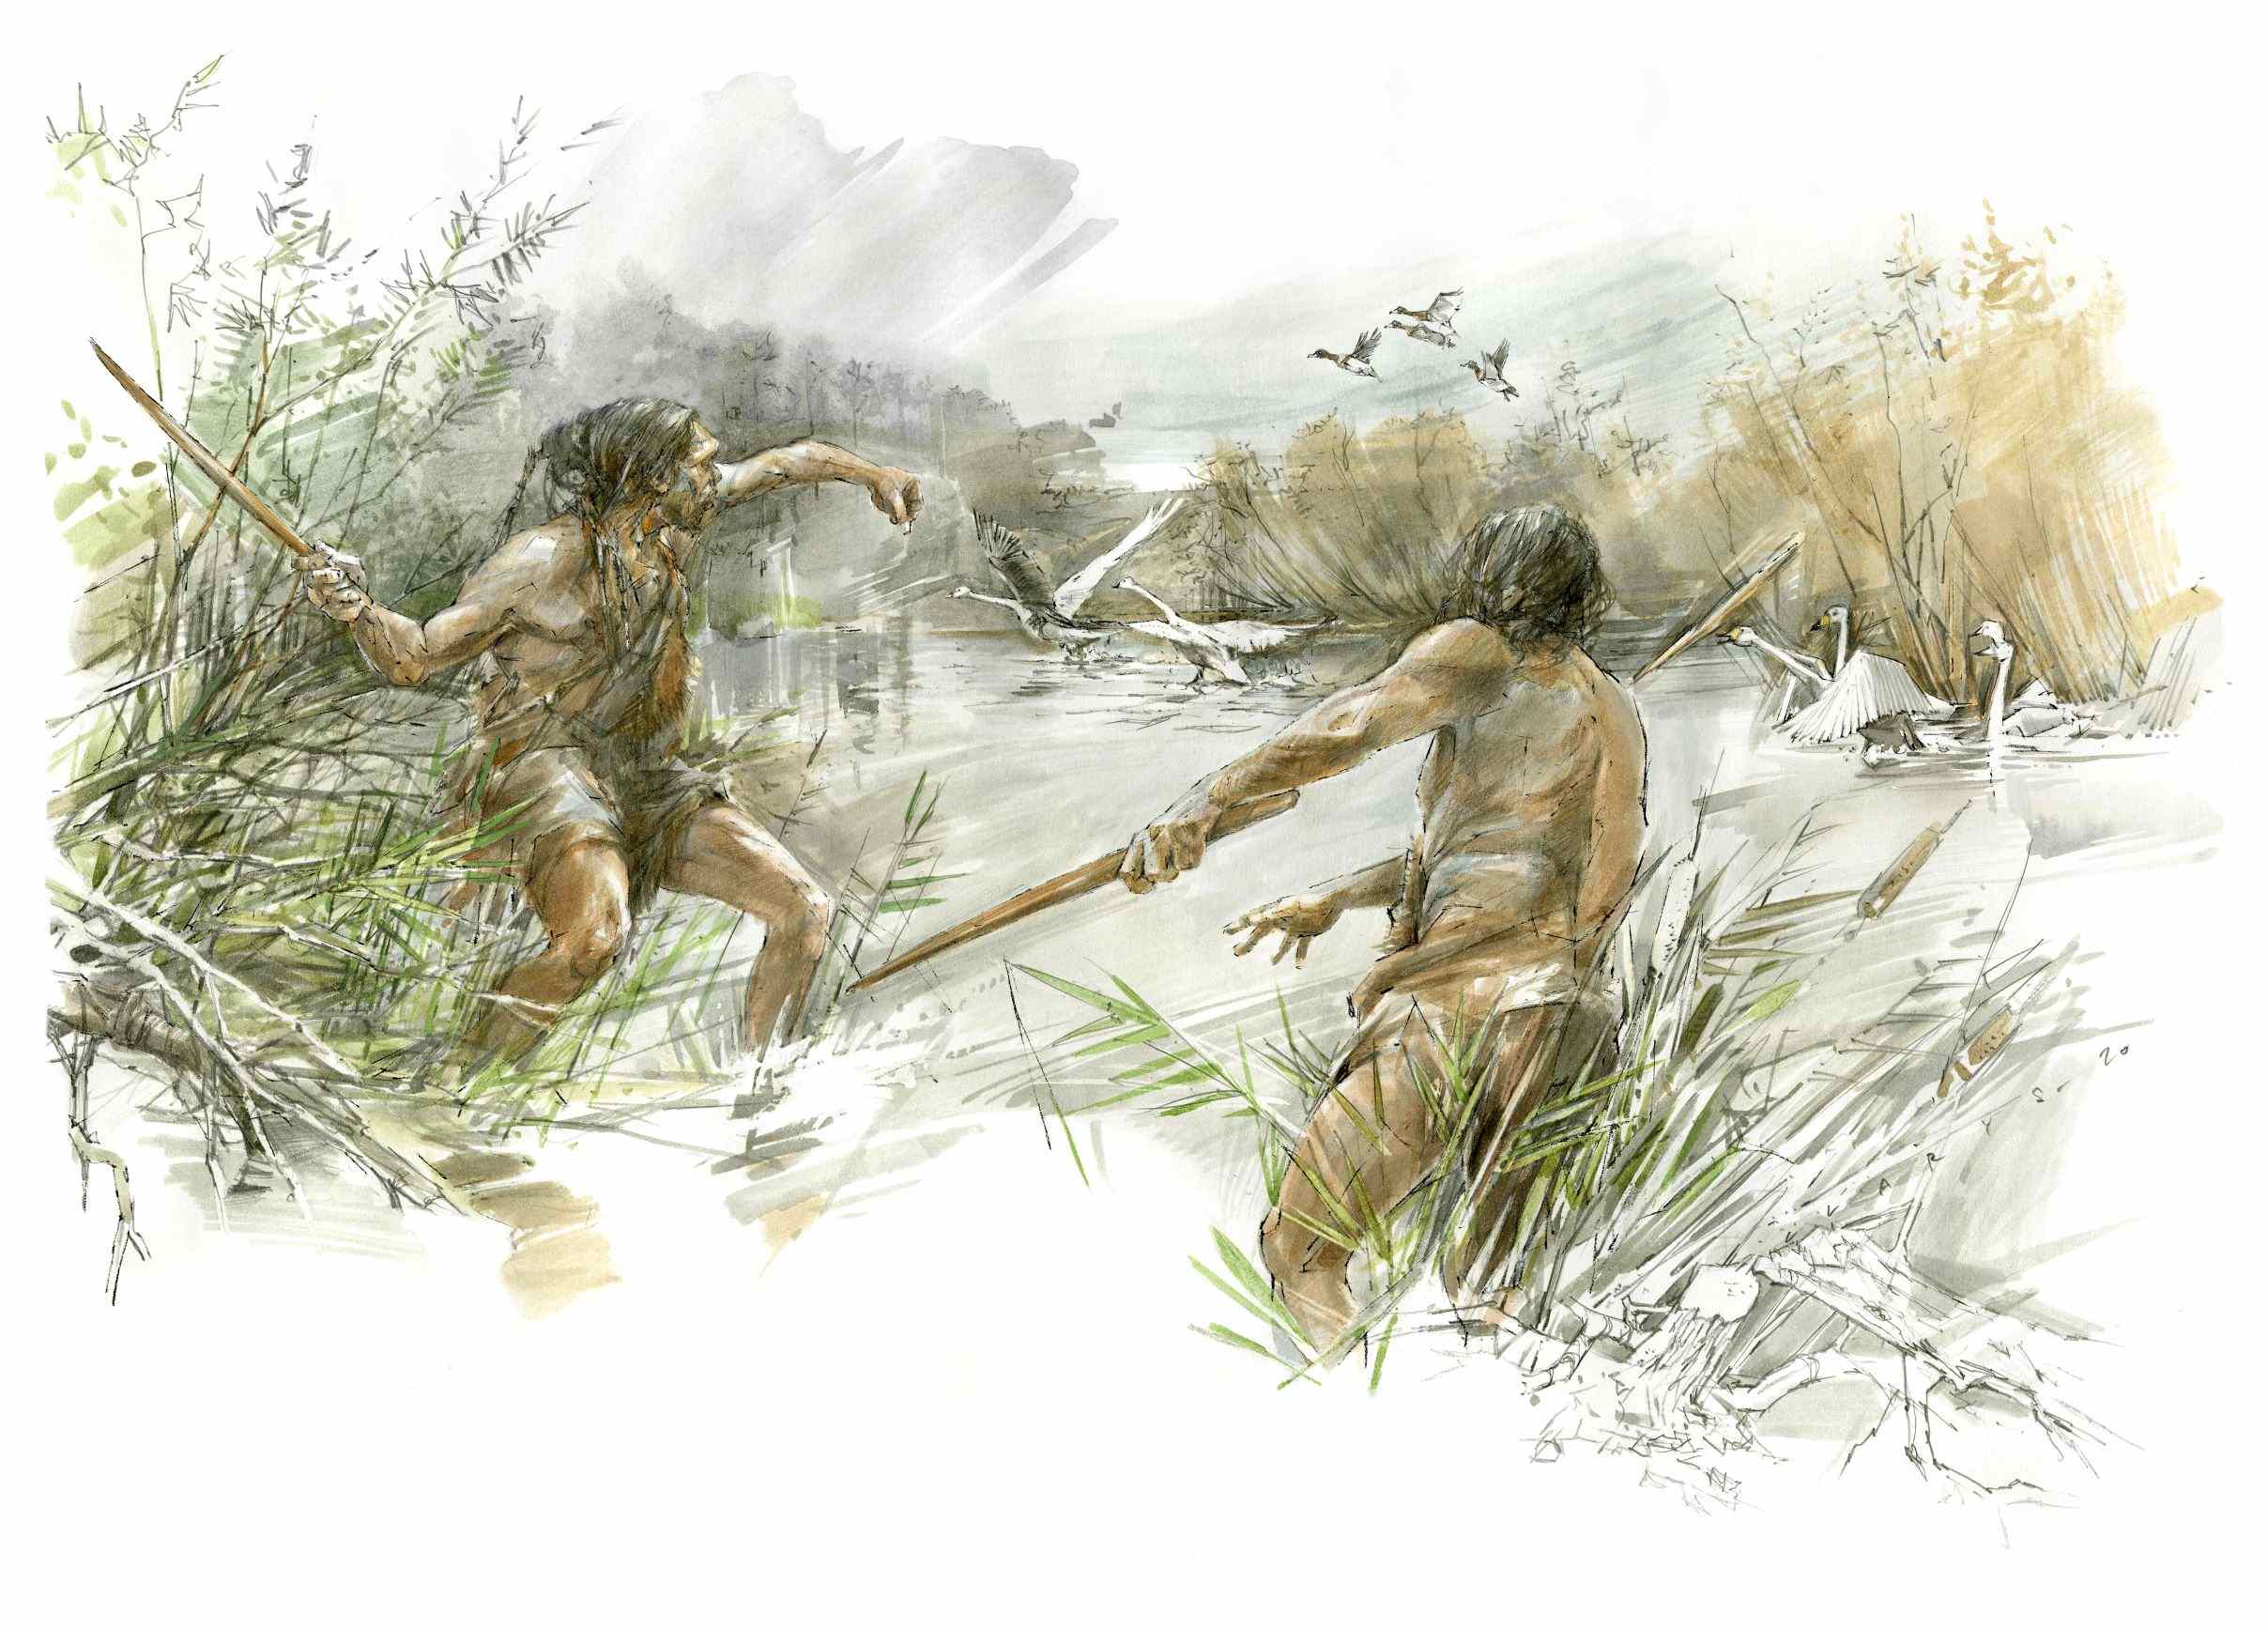 Lanzas de Schöningen de 300,000 años de antigüedad revelan carpintería prehistórica avanzada 1